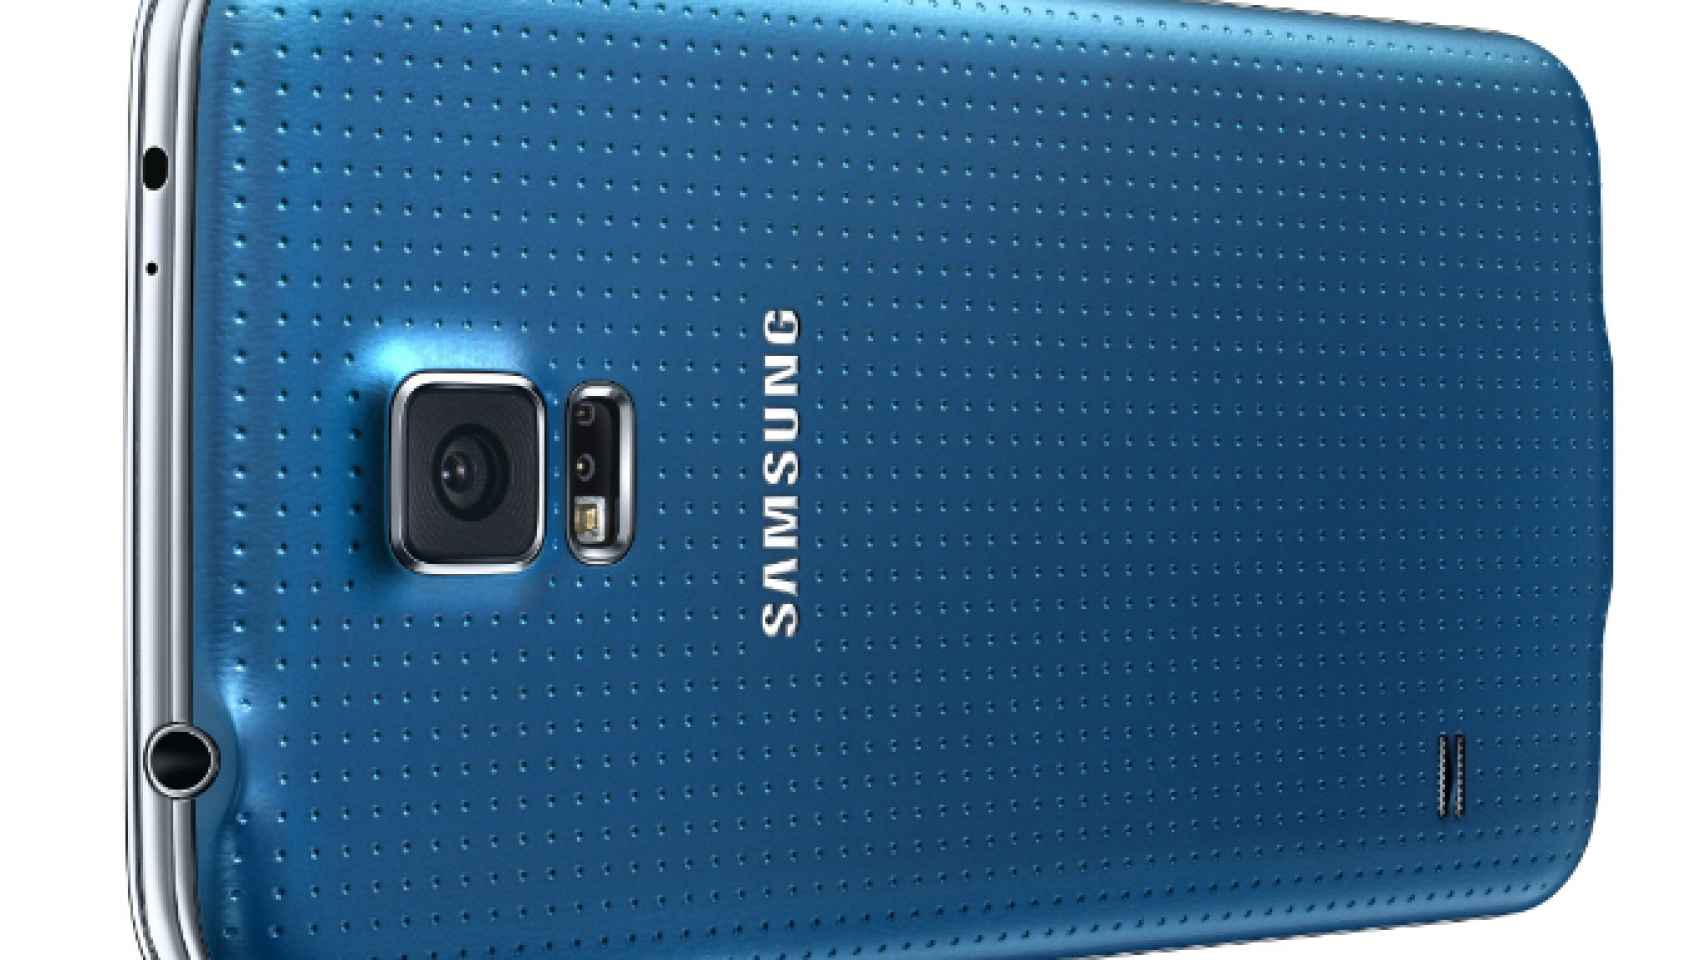 Samsung Galaxy S5 mini tendrá pantalla HD de 4.5'', 1.5GB de RAM y  procesador Qualcomm